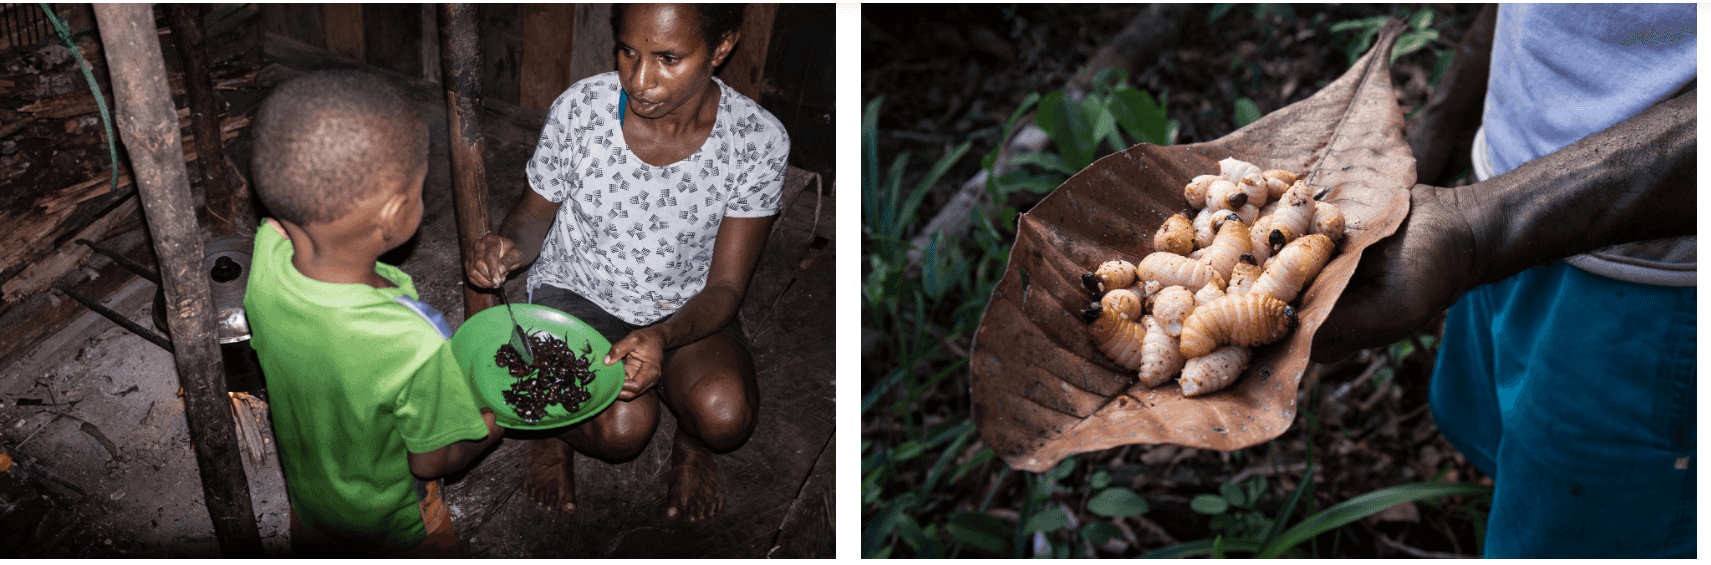 Laura menyuapi seorang anak dengan ulat sagu sebagai makanan (kiri). Ulat sagu yang hidup di bangkai pohon sagu, dianggap sebagai santapan lezat dan kaya protein.